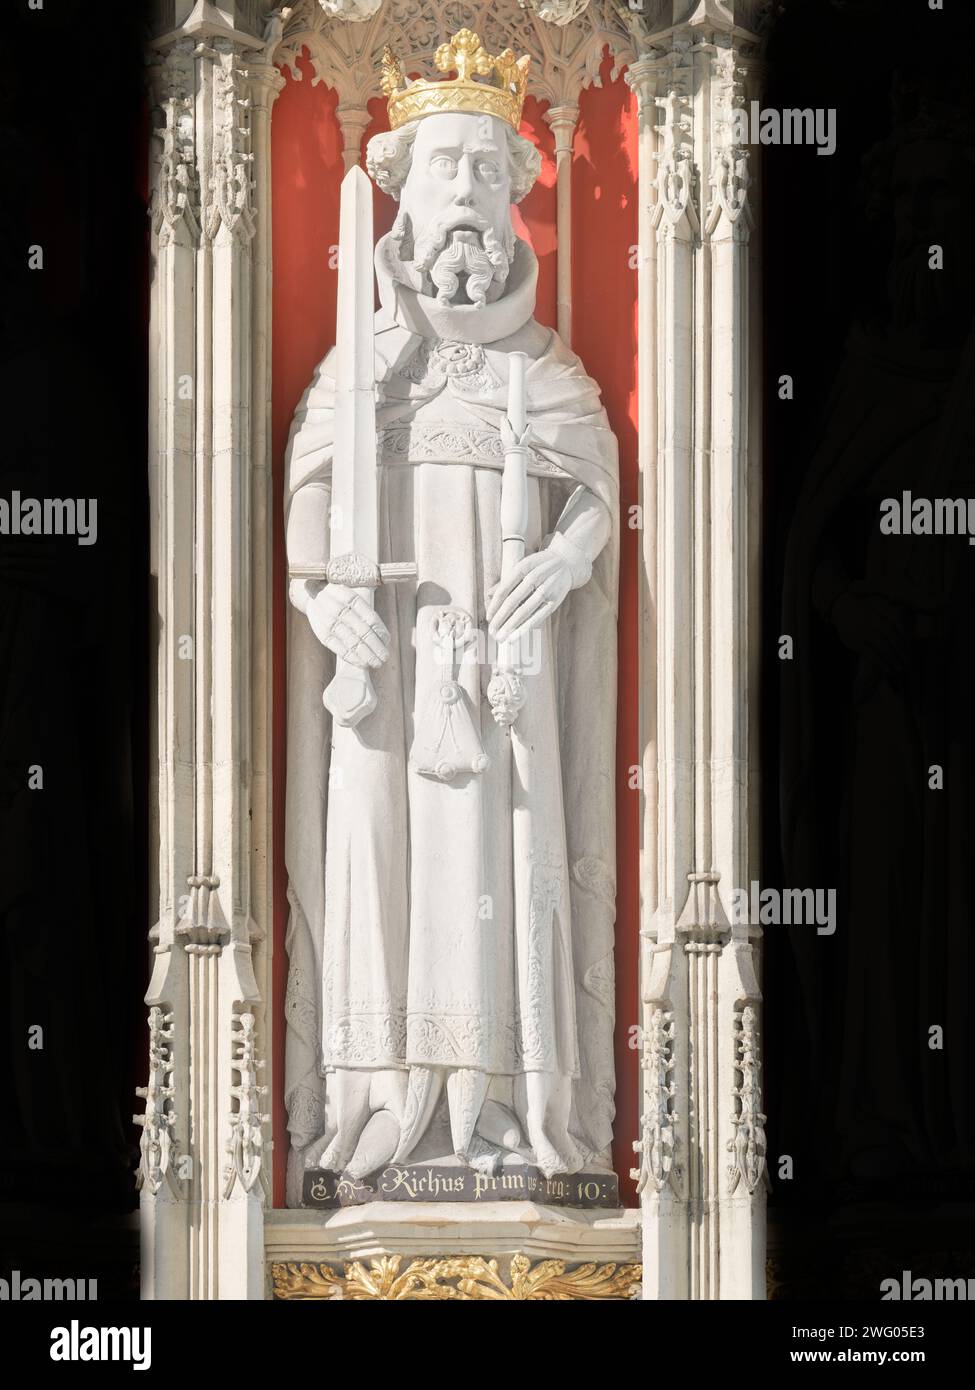 Statue d'un roi anglais médiéval, Richard Ier, sur l'écran de la Minster (cathédrale) à York, Angleterre. Banque D'Images